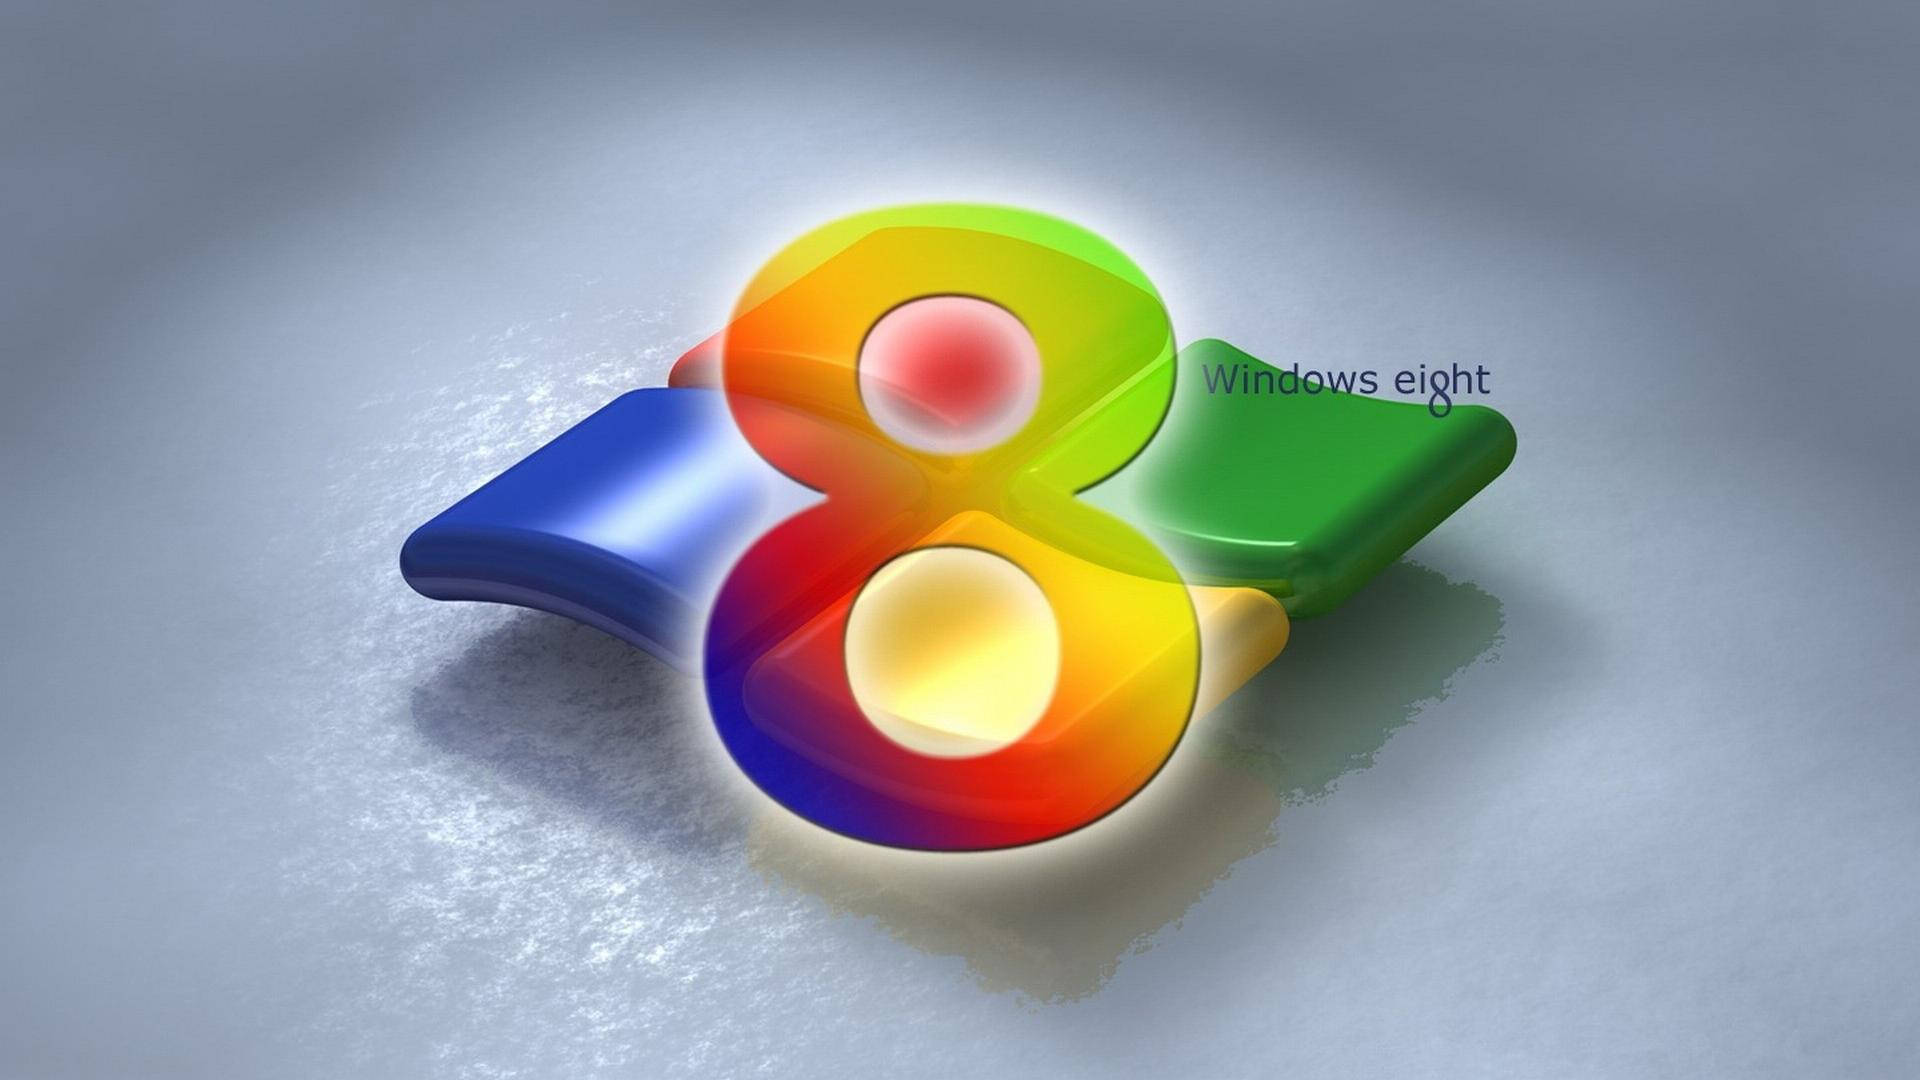 Färggladawindows 8 Logotypen Och Numret. Wallpaper